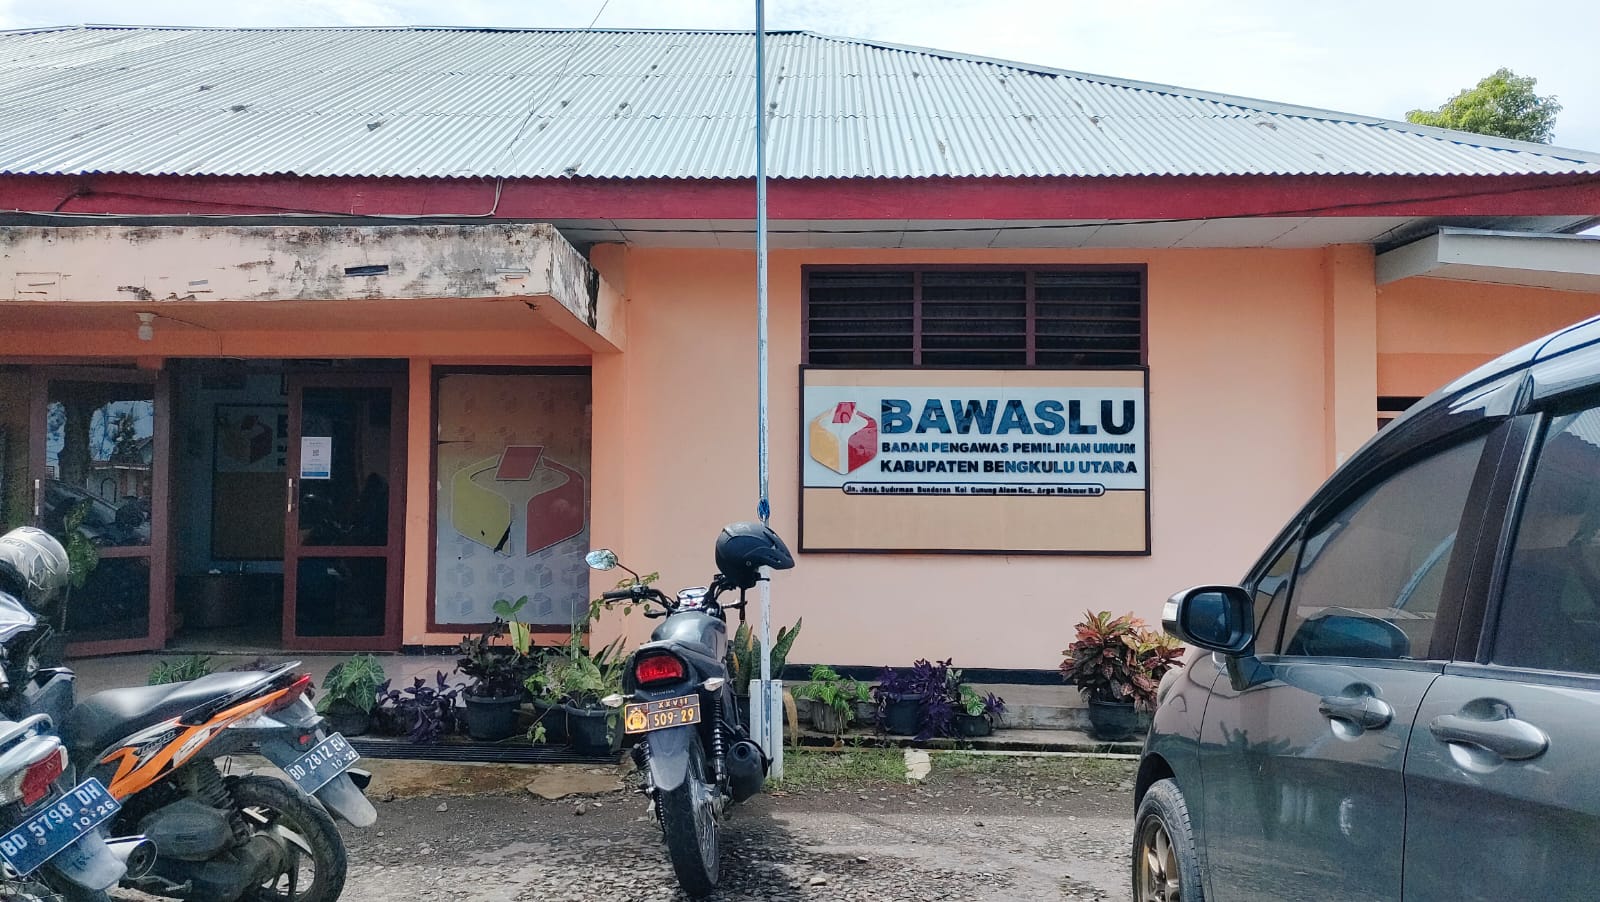 Soal Perangkat Desa jadi Penyelenggara Pemilu, Bawaslu Bengkulu Utara Sampaikan Ini